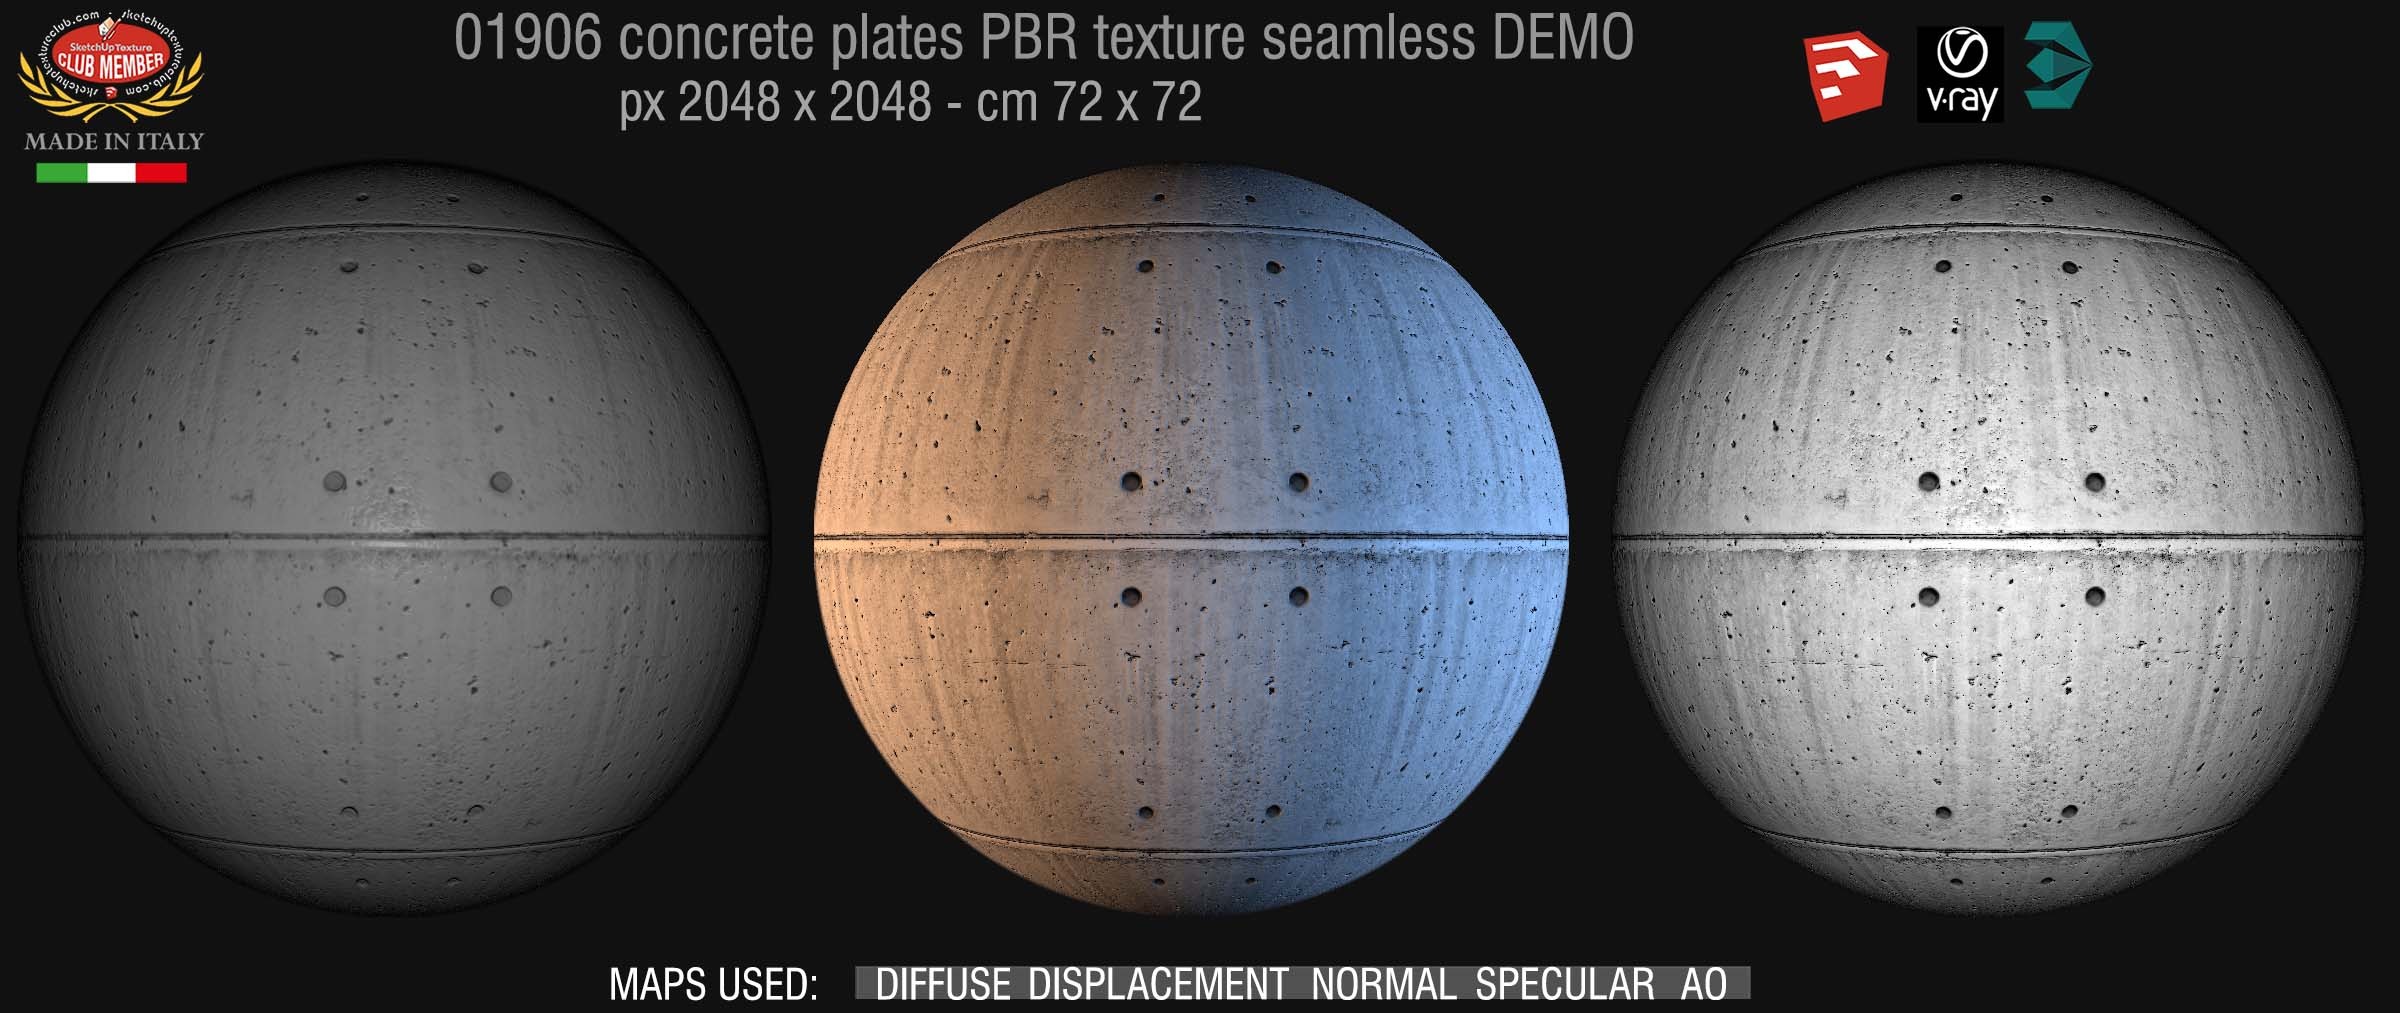 01906 Tadao ando concrete dirty plates PBR seamless texture DEMO